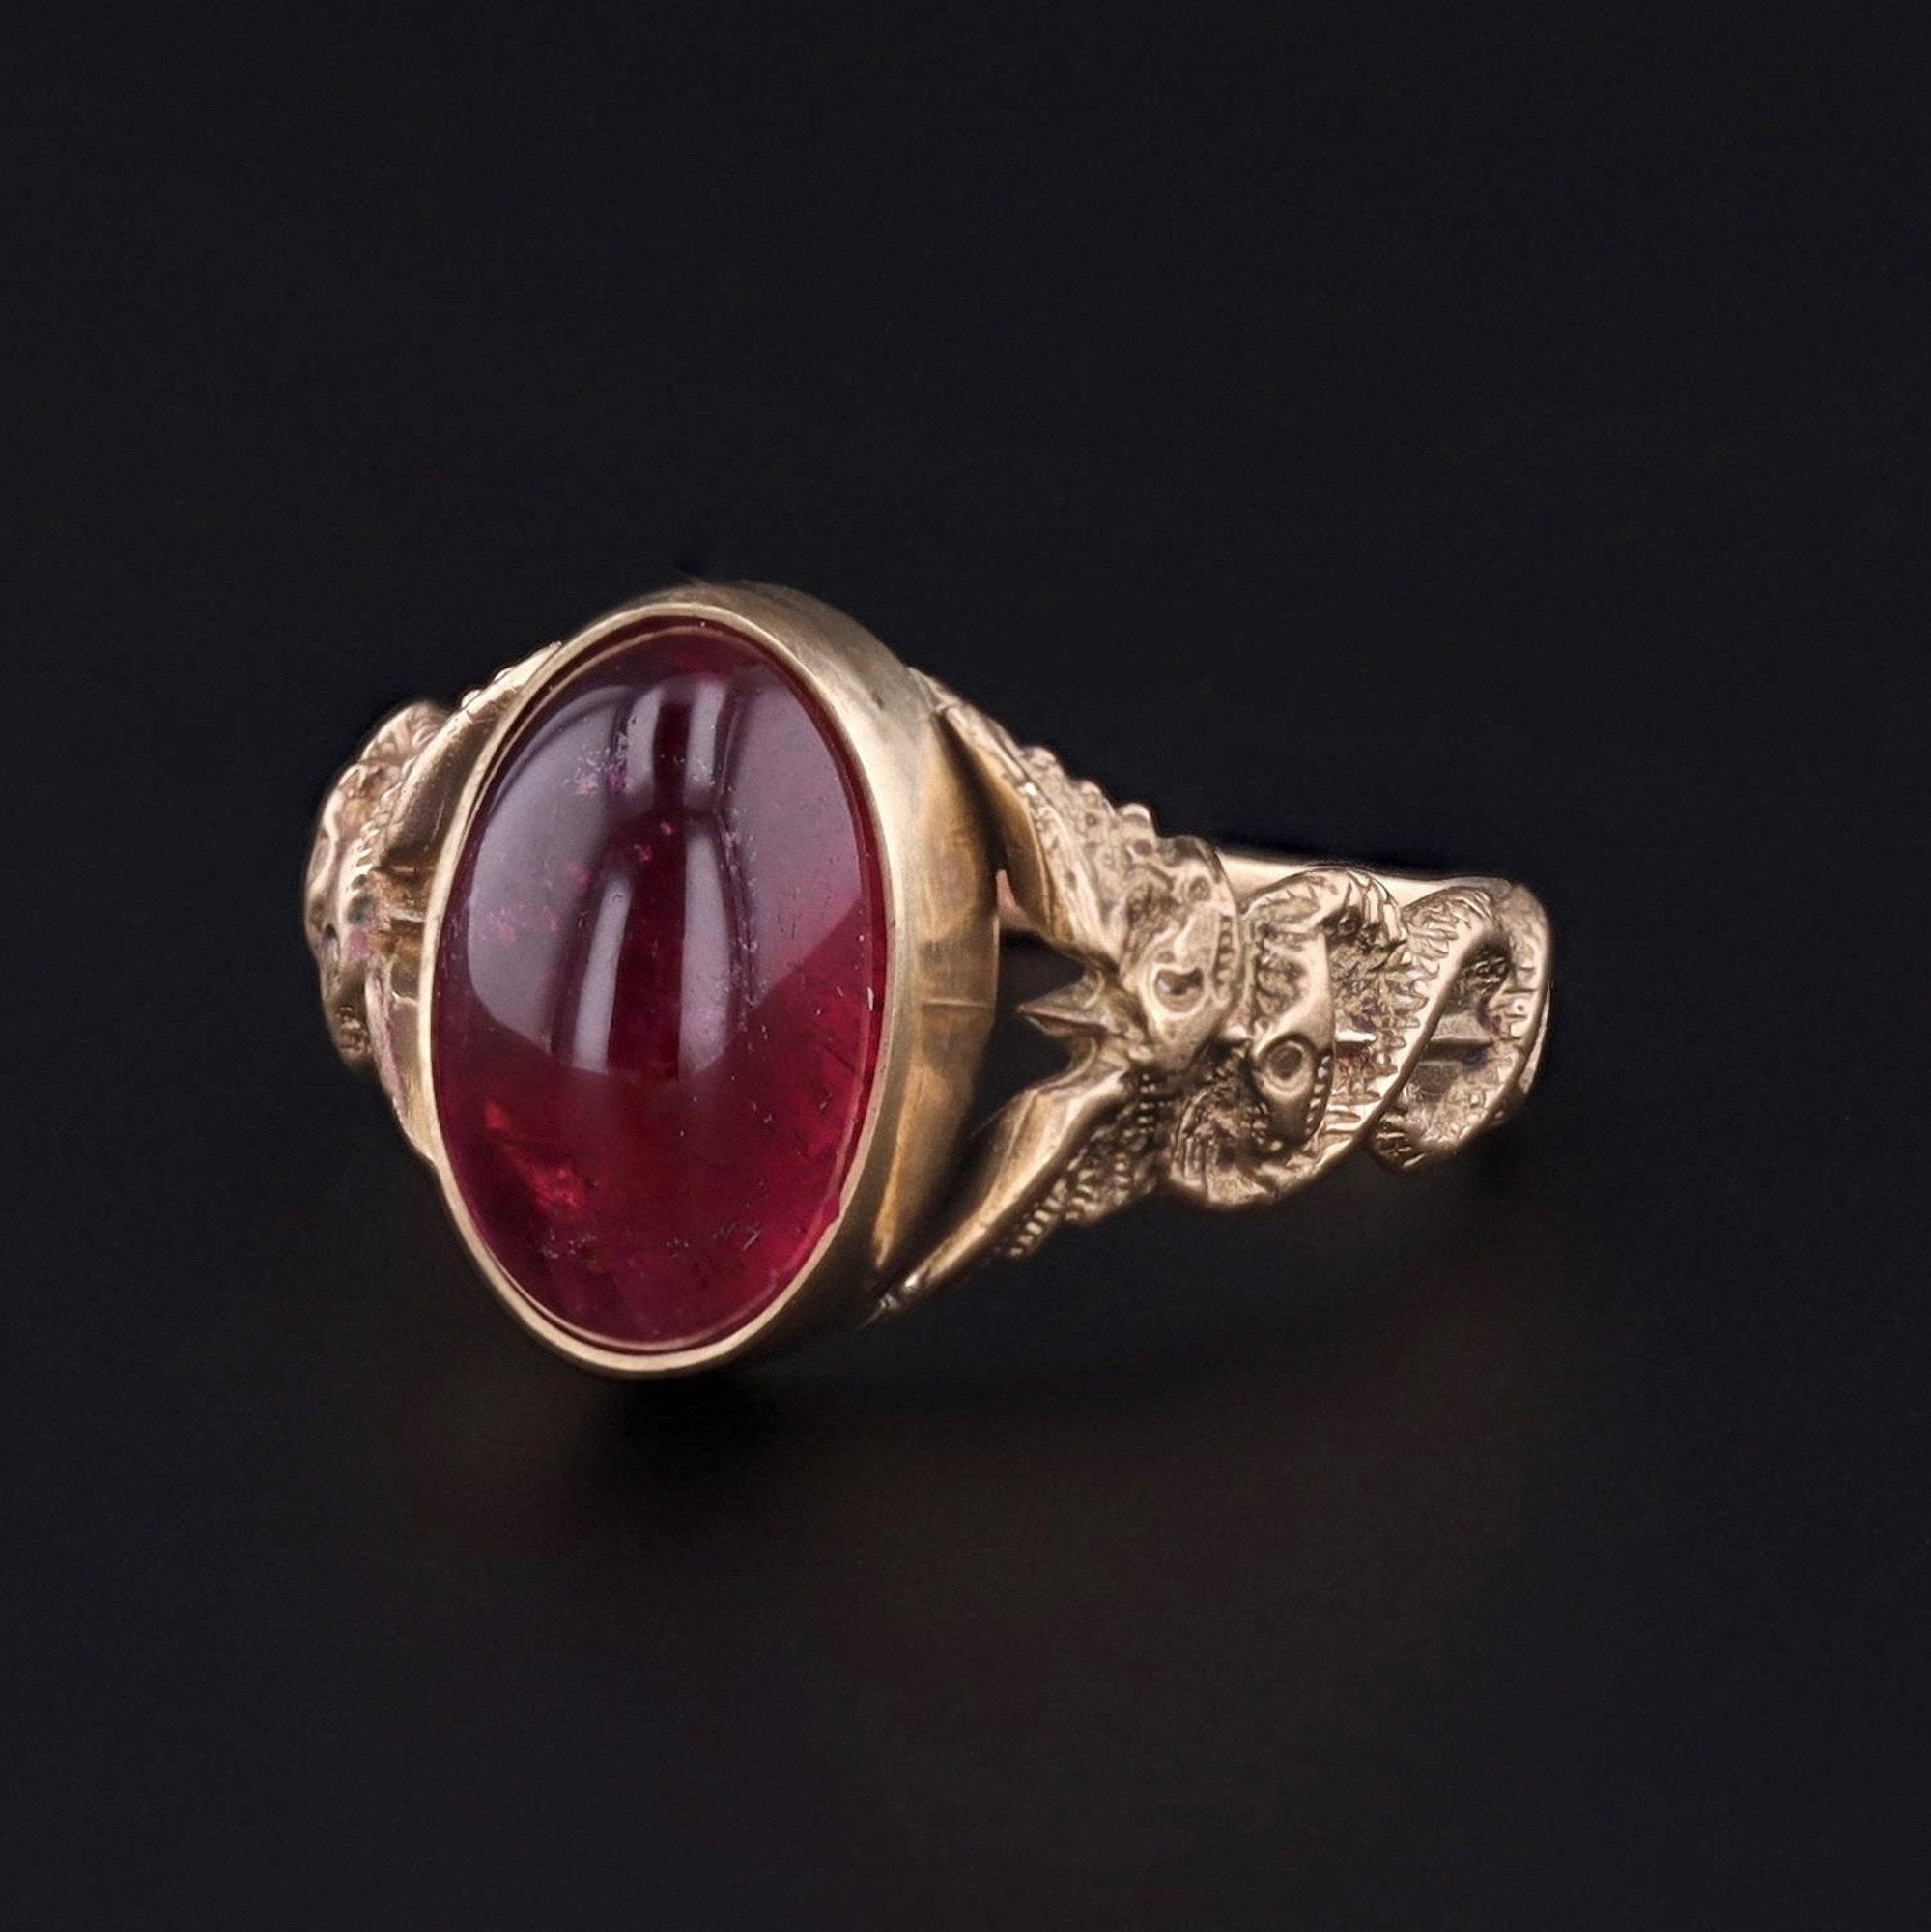 Caduceus Ring | 14k Gold & Pink Tourmaline Ring | 14k Gold Ring | Art Nouveau Style Ring